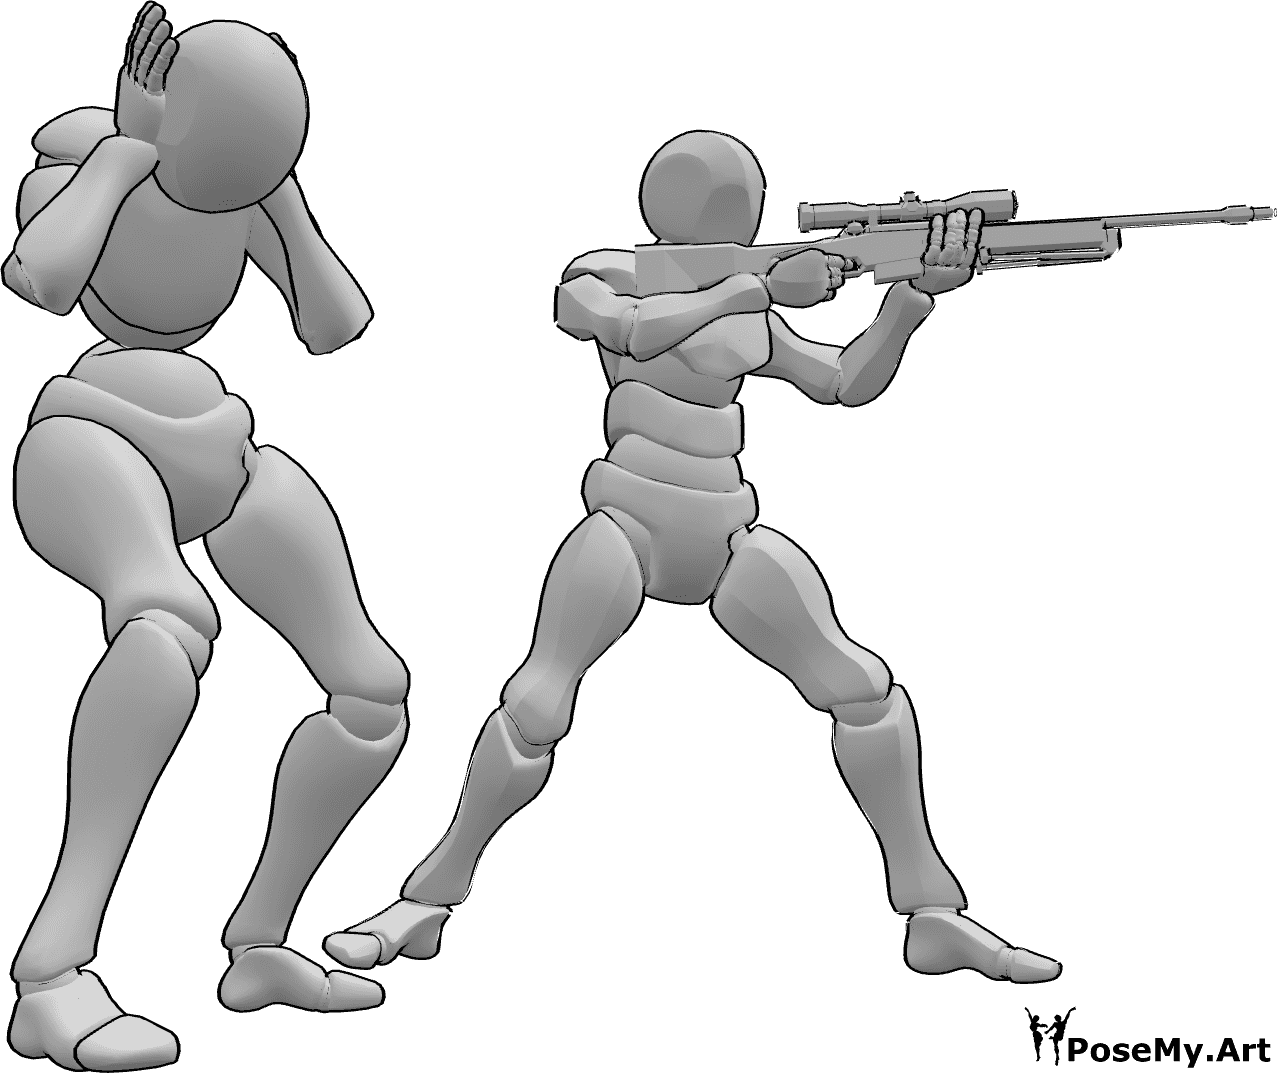 Posen-Referenz- Weiblich männlich schießende Pose - Das Männchen schießt und das Männchen bekommt Angst